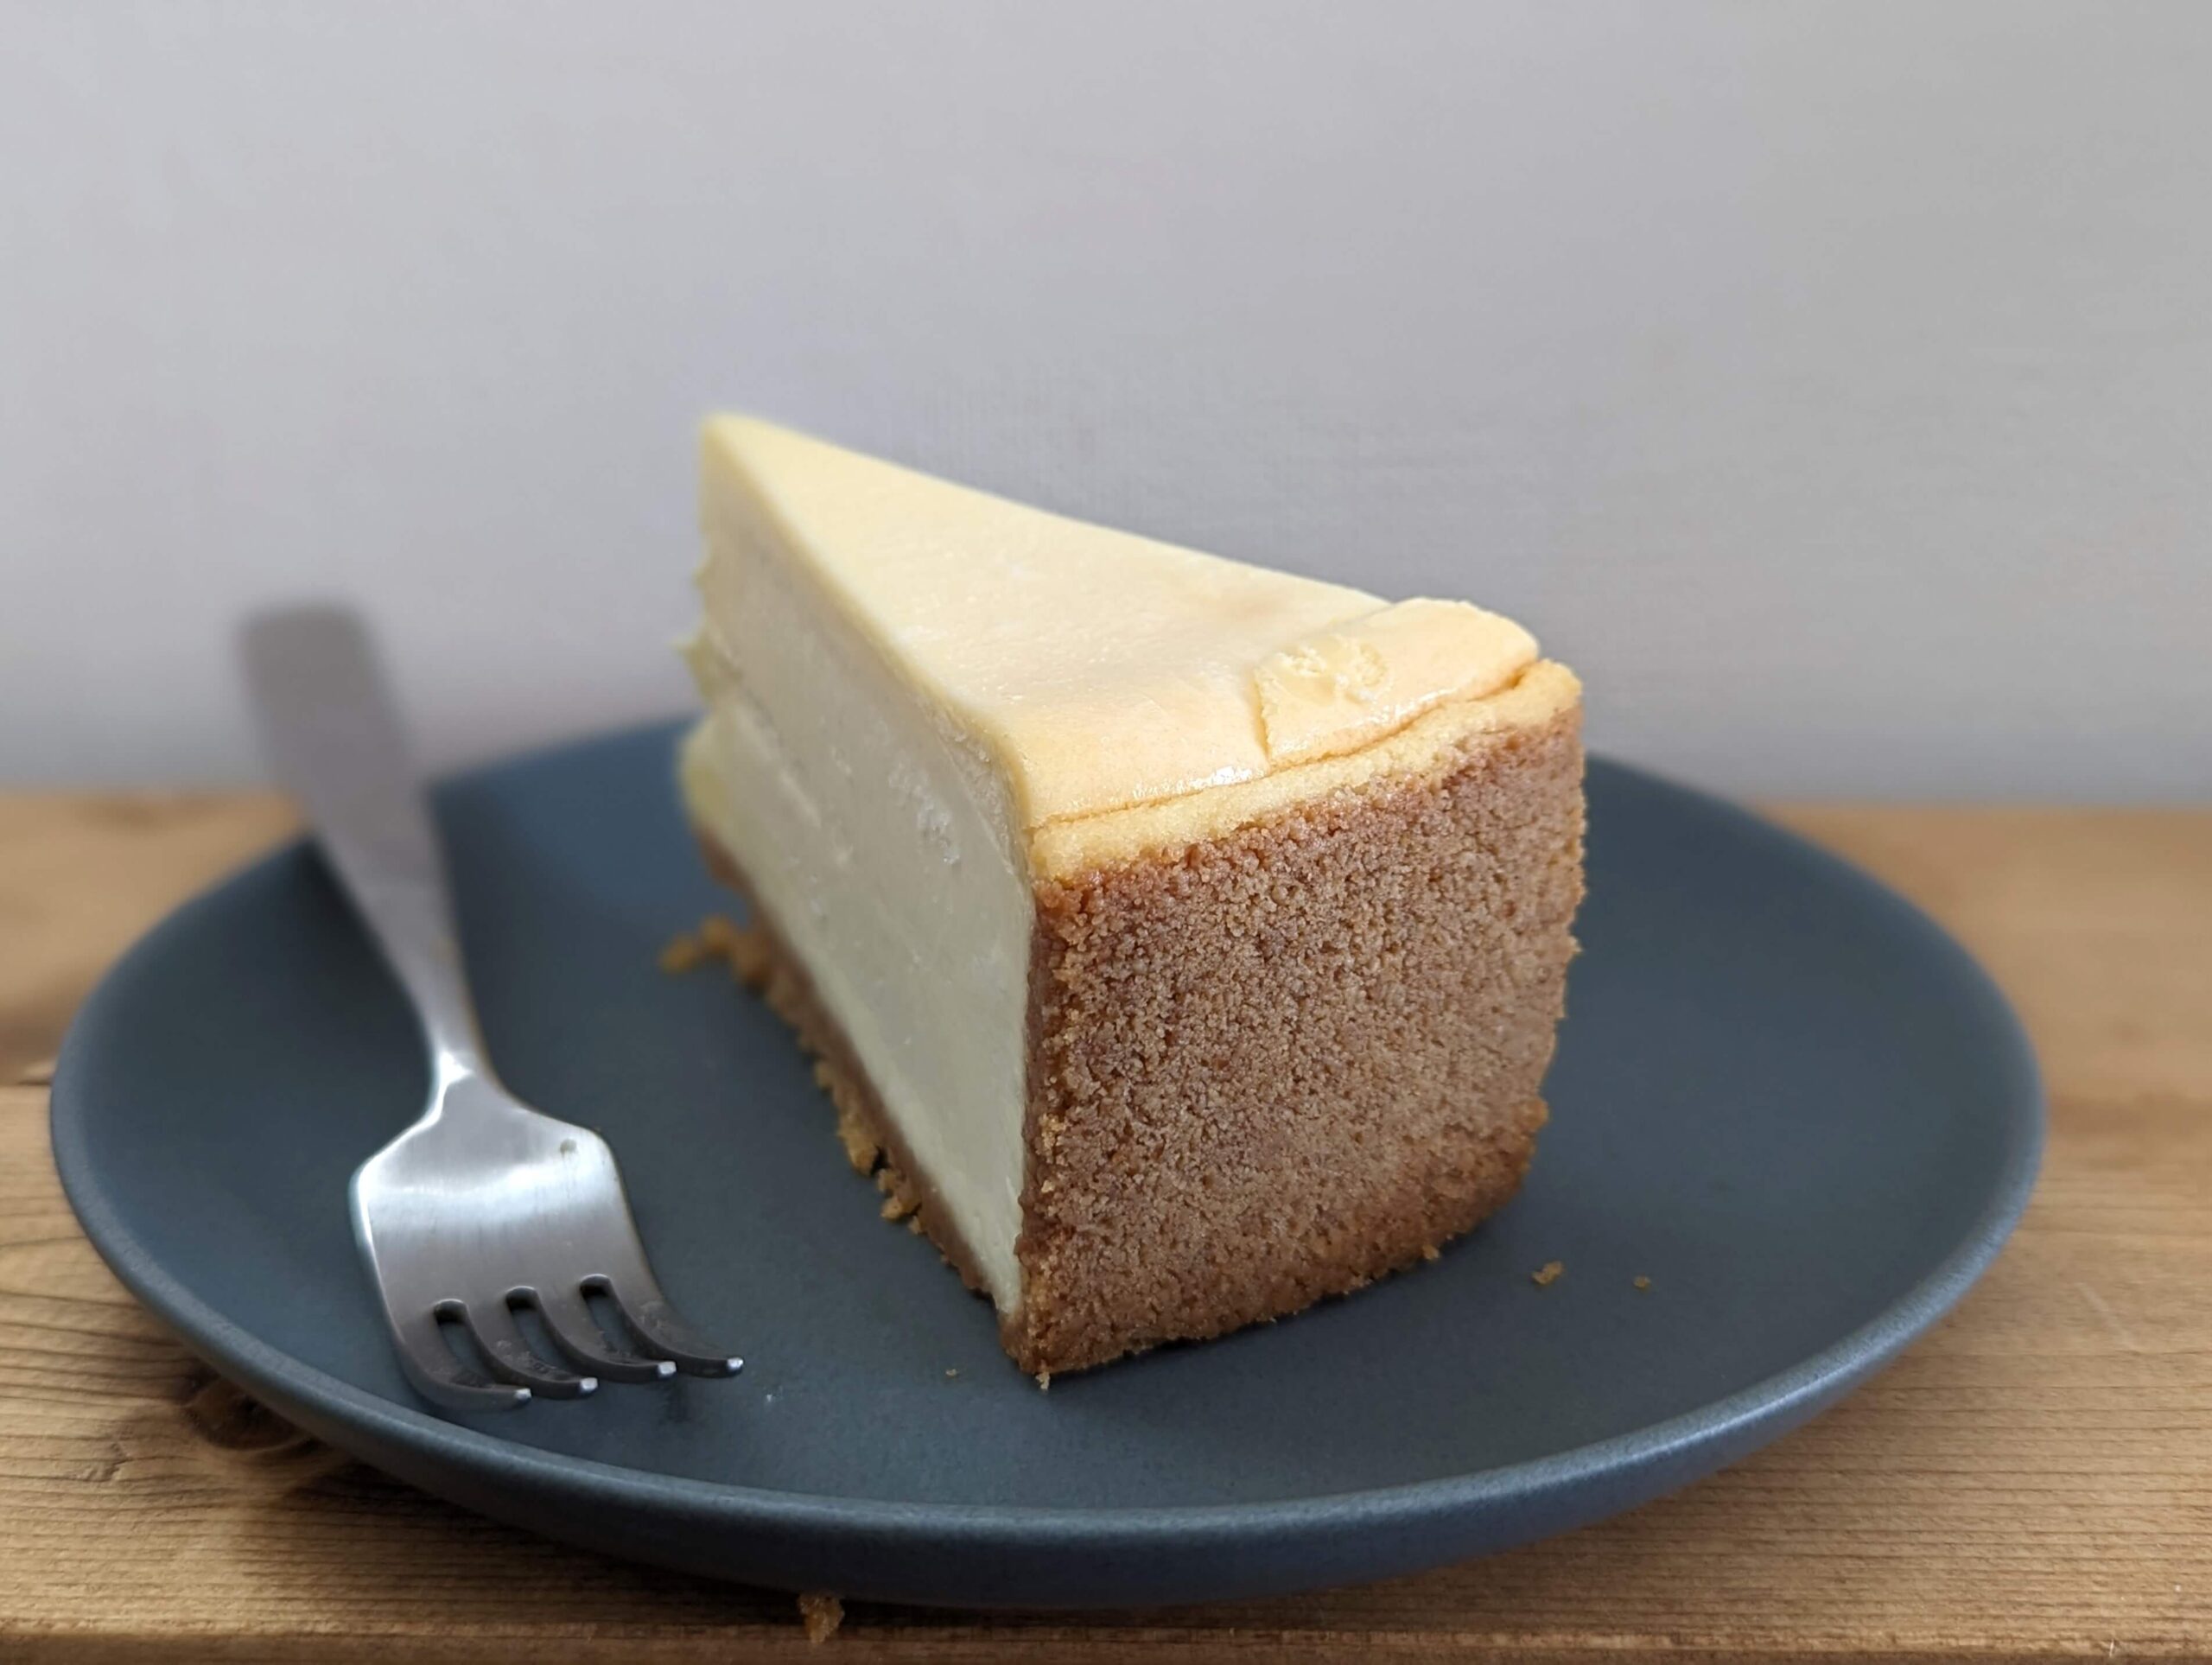 コストコ(COSTCO)のTHE CHEESECAKE FACTORY オリジナルチーズケーキ (16)